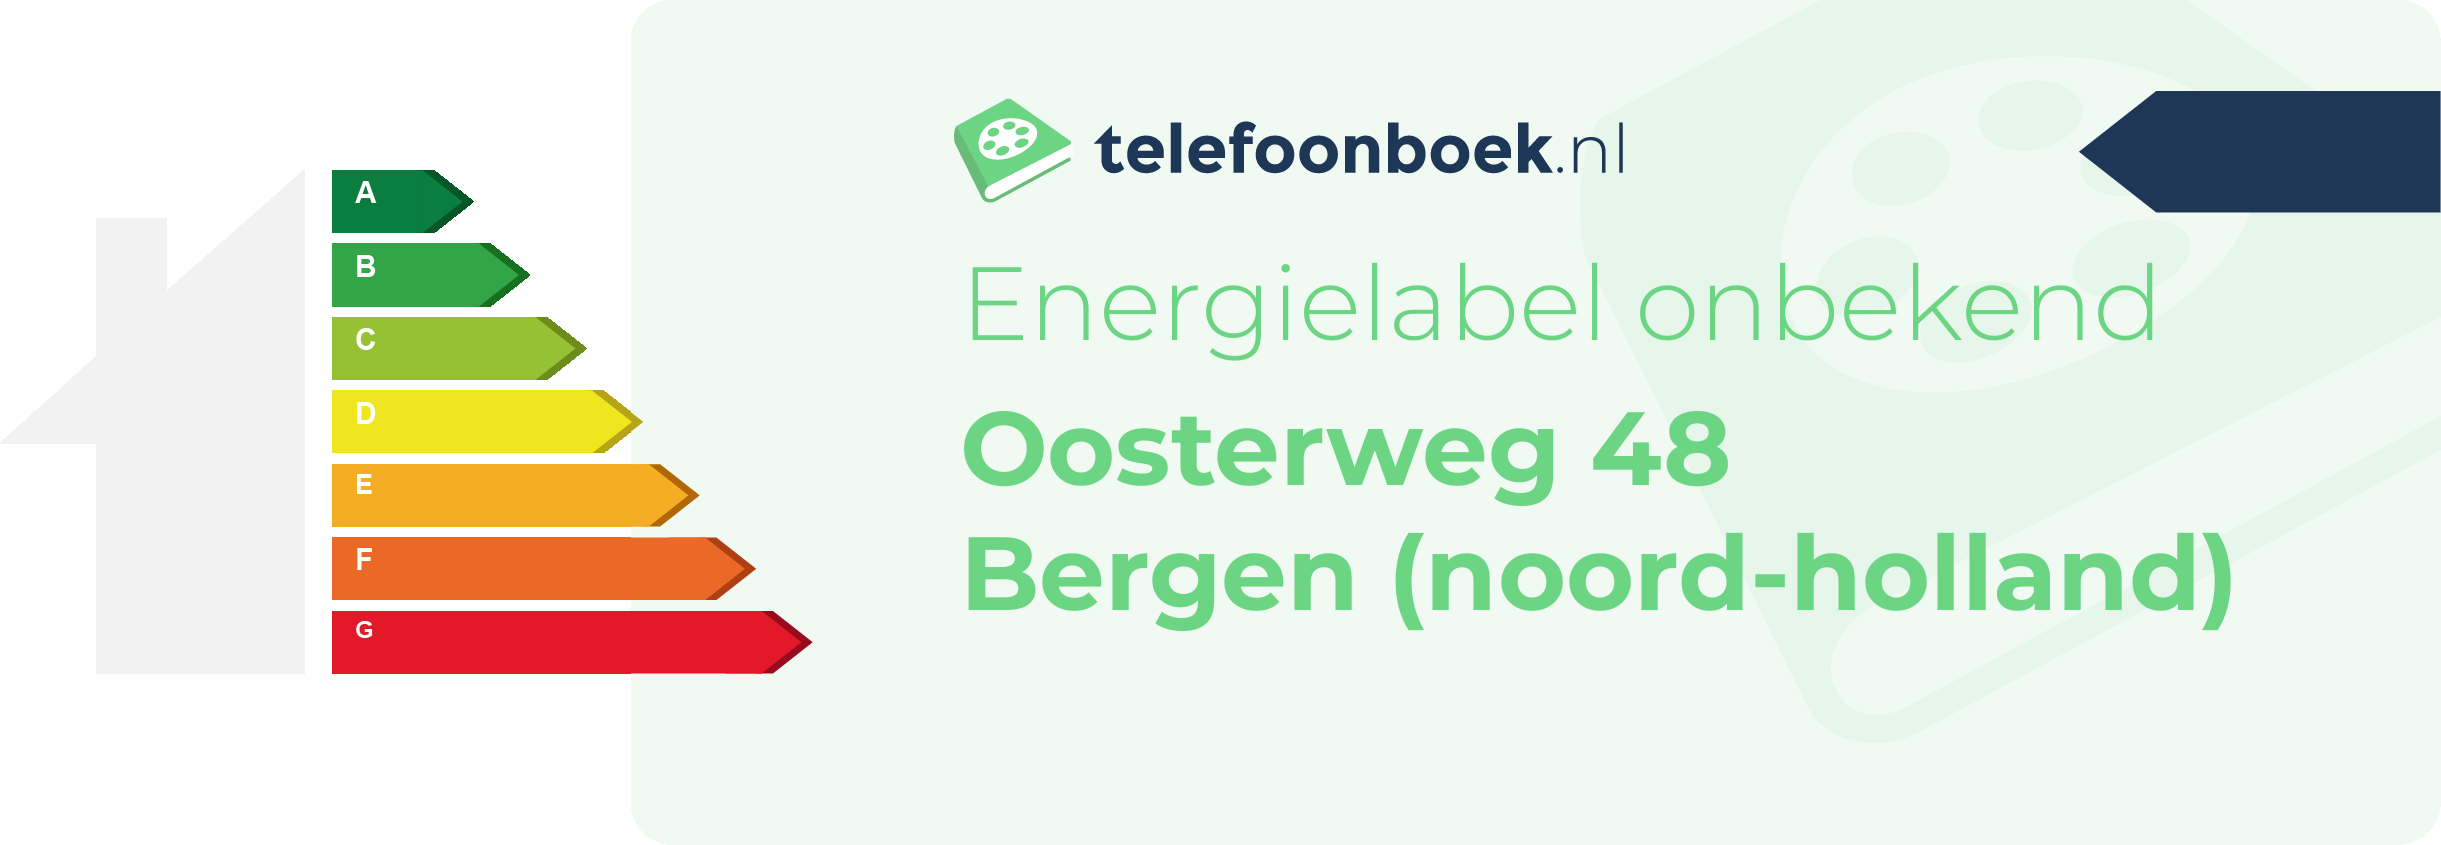 Energielabel Oosterweg 48 Bergen (Noord-Holland)